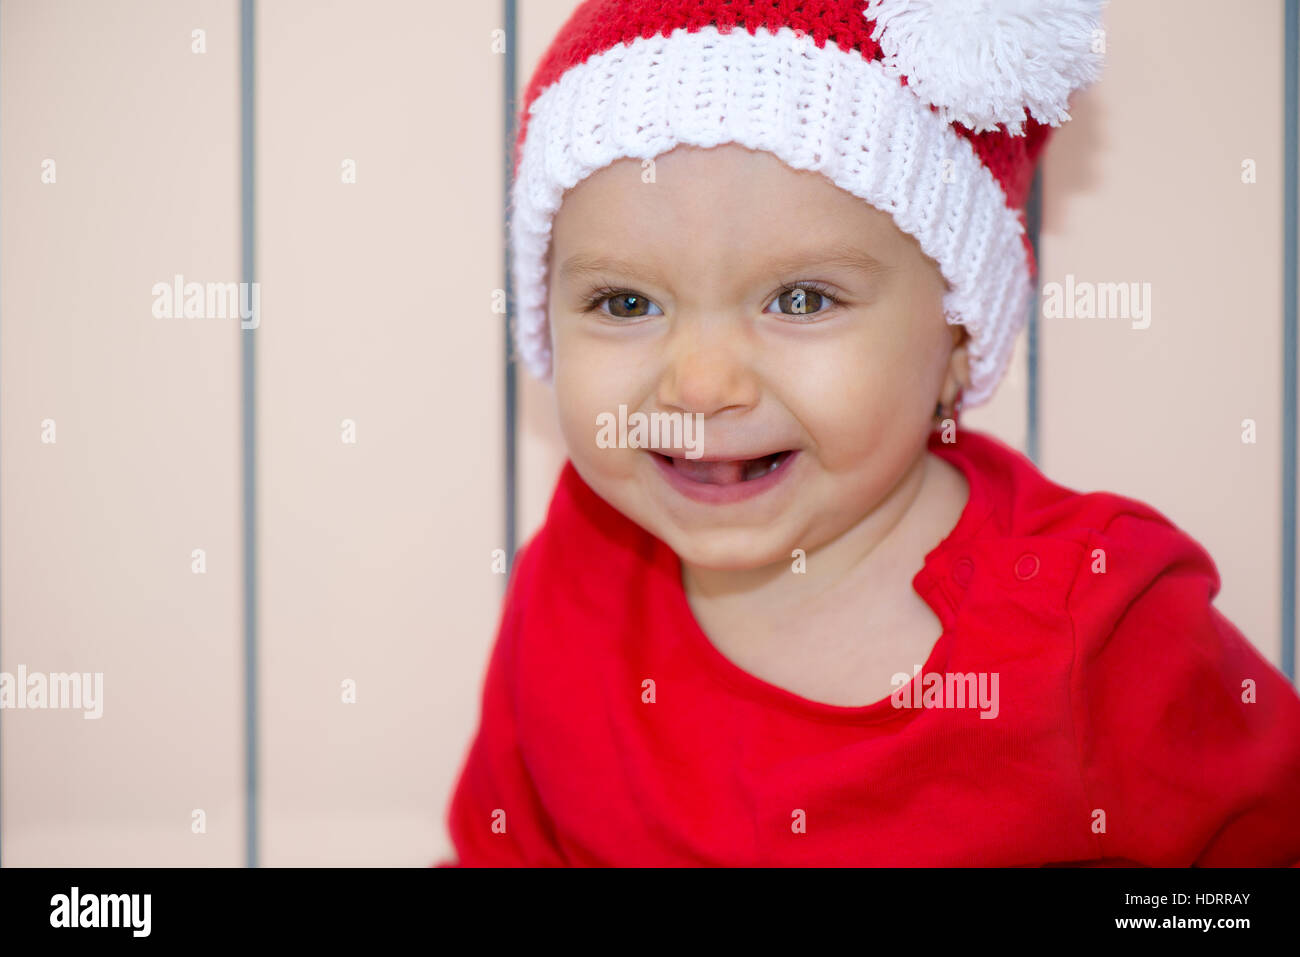 Baby portrait Stock Photo